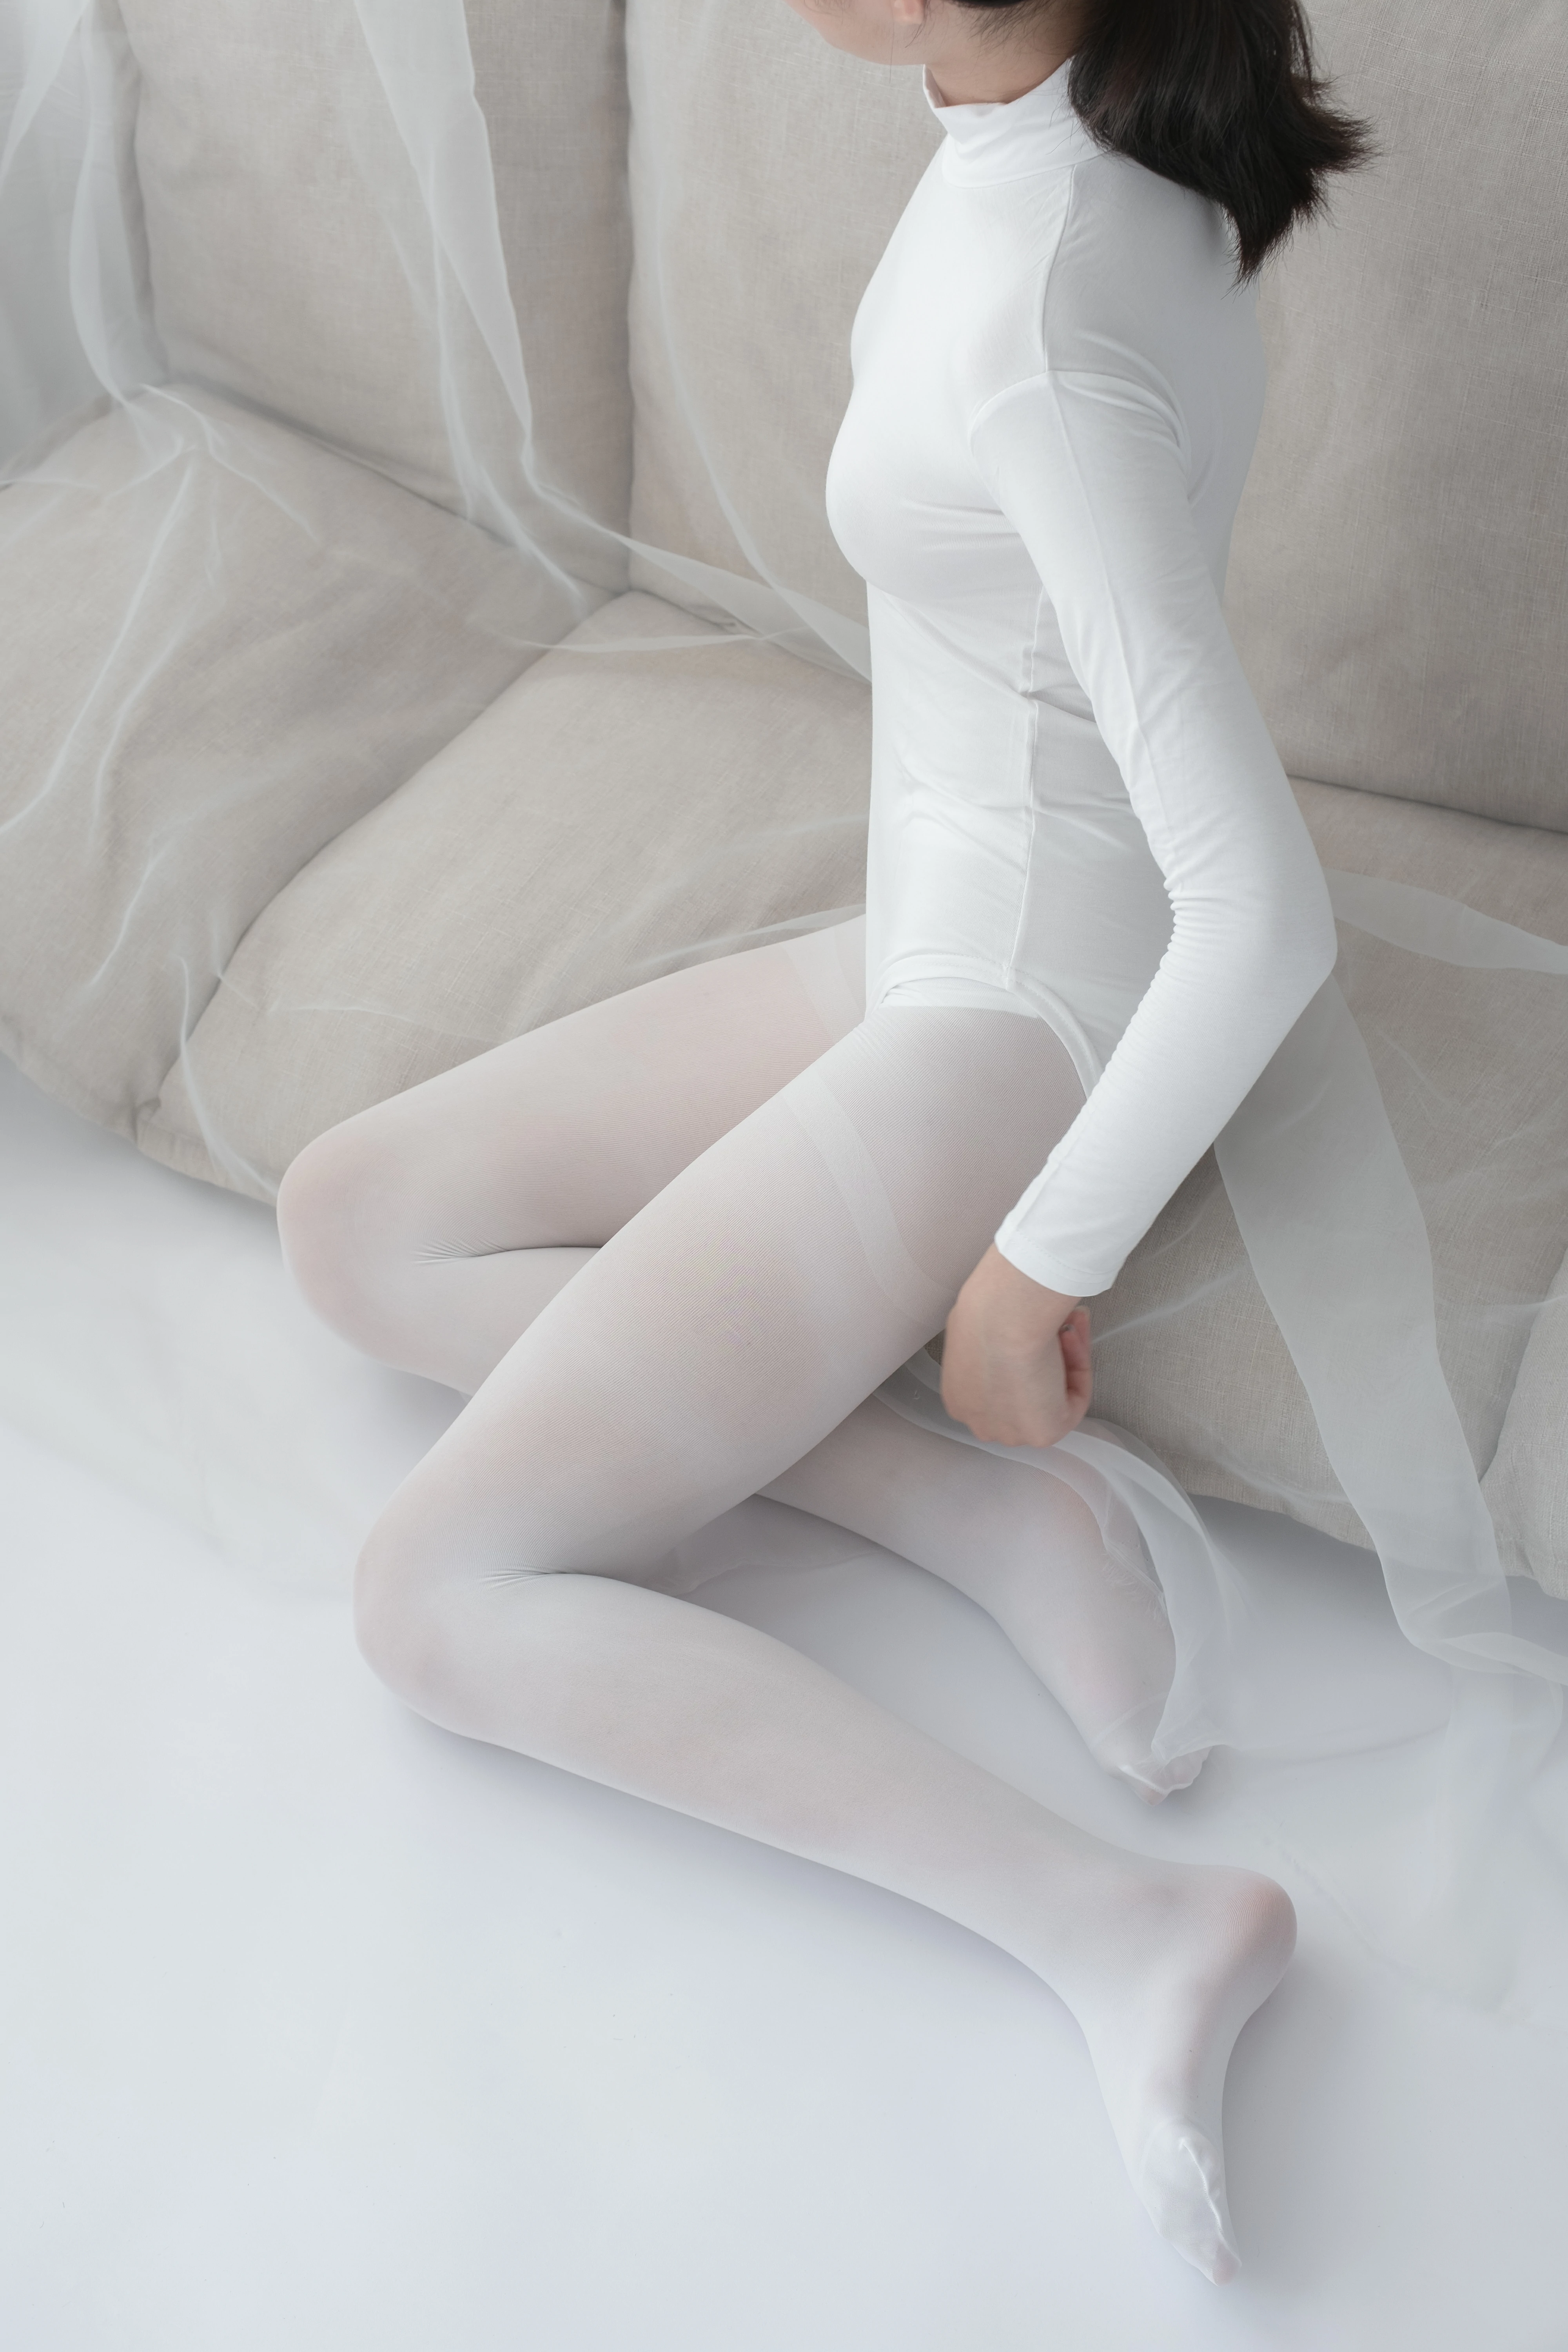 [森萝财团]爱花写真-ALPHA-007 清纯小萝莉 白色紧身连体衣加白色丝袜美腿玉足性感私房写真集,